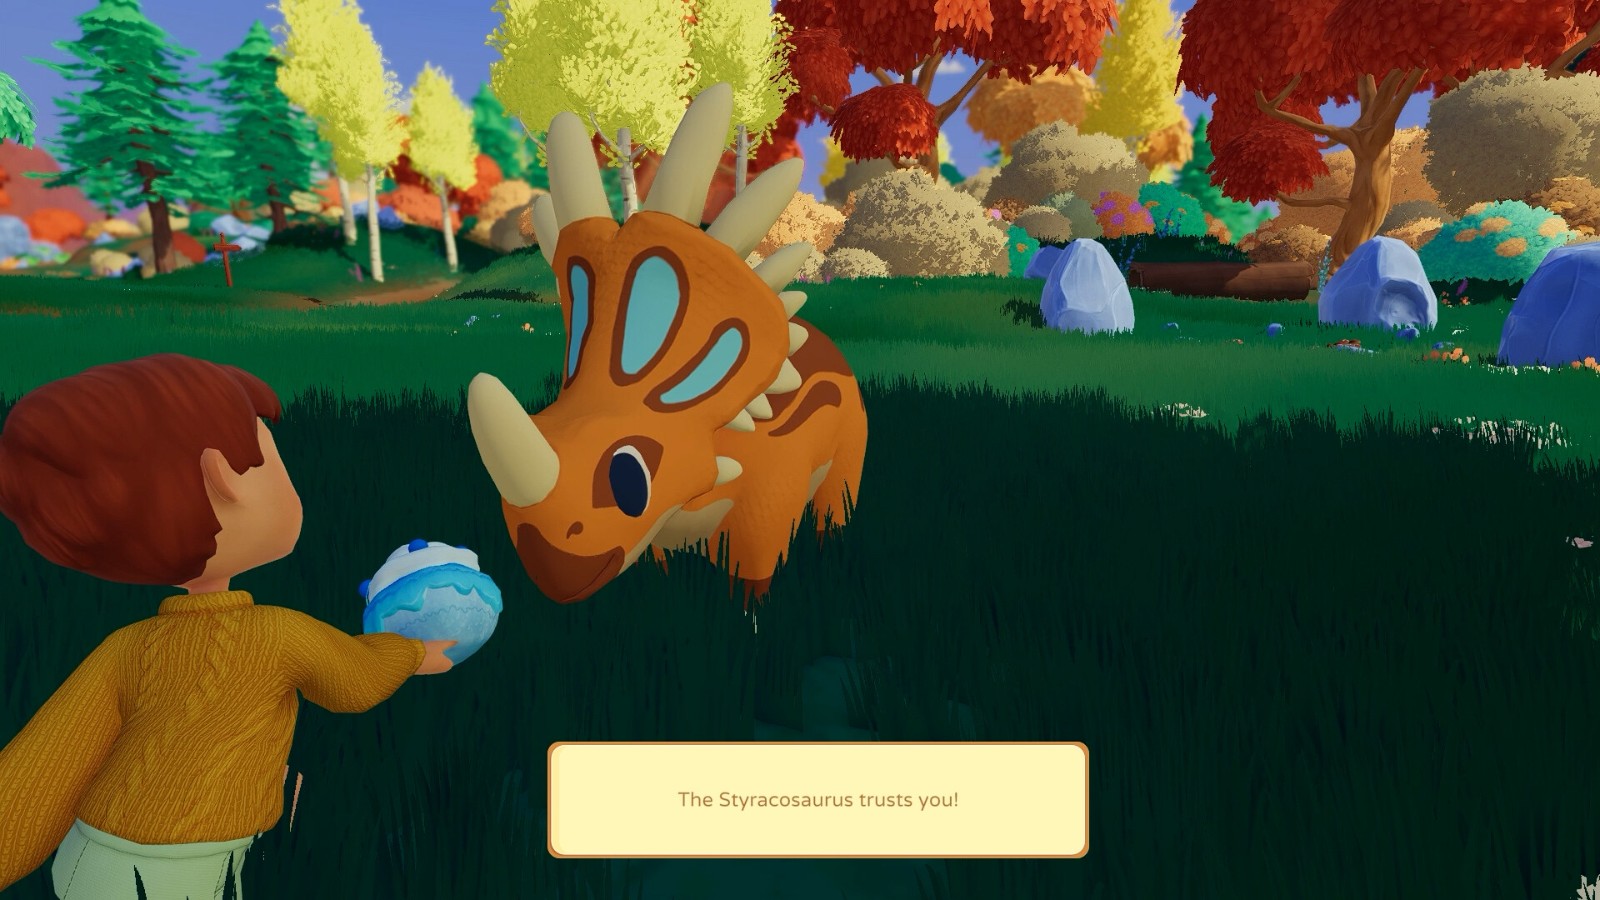 農場模擬遊戲《Paleo Pines》今秋發售 登陸全平台